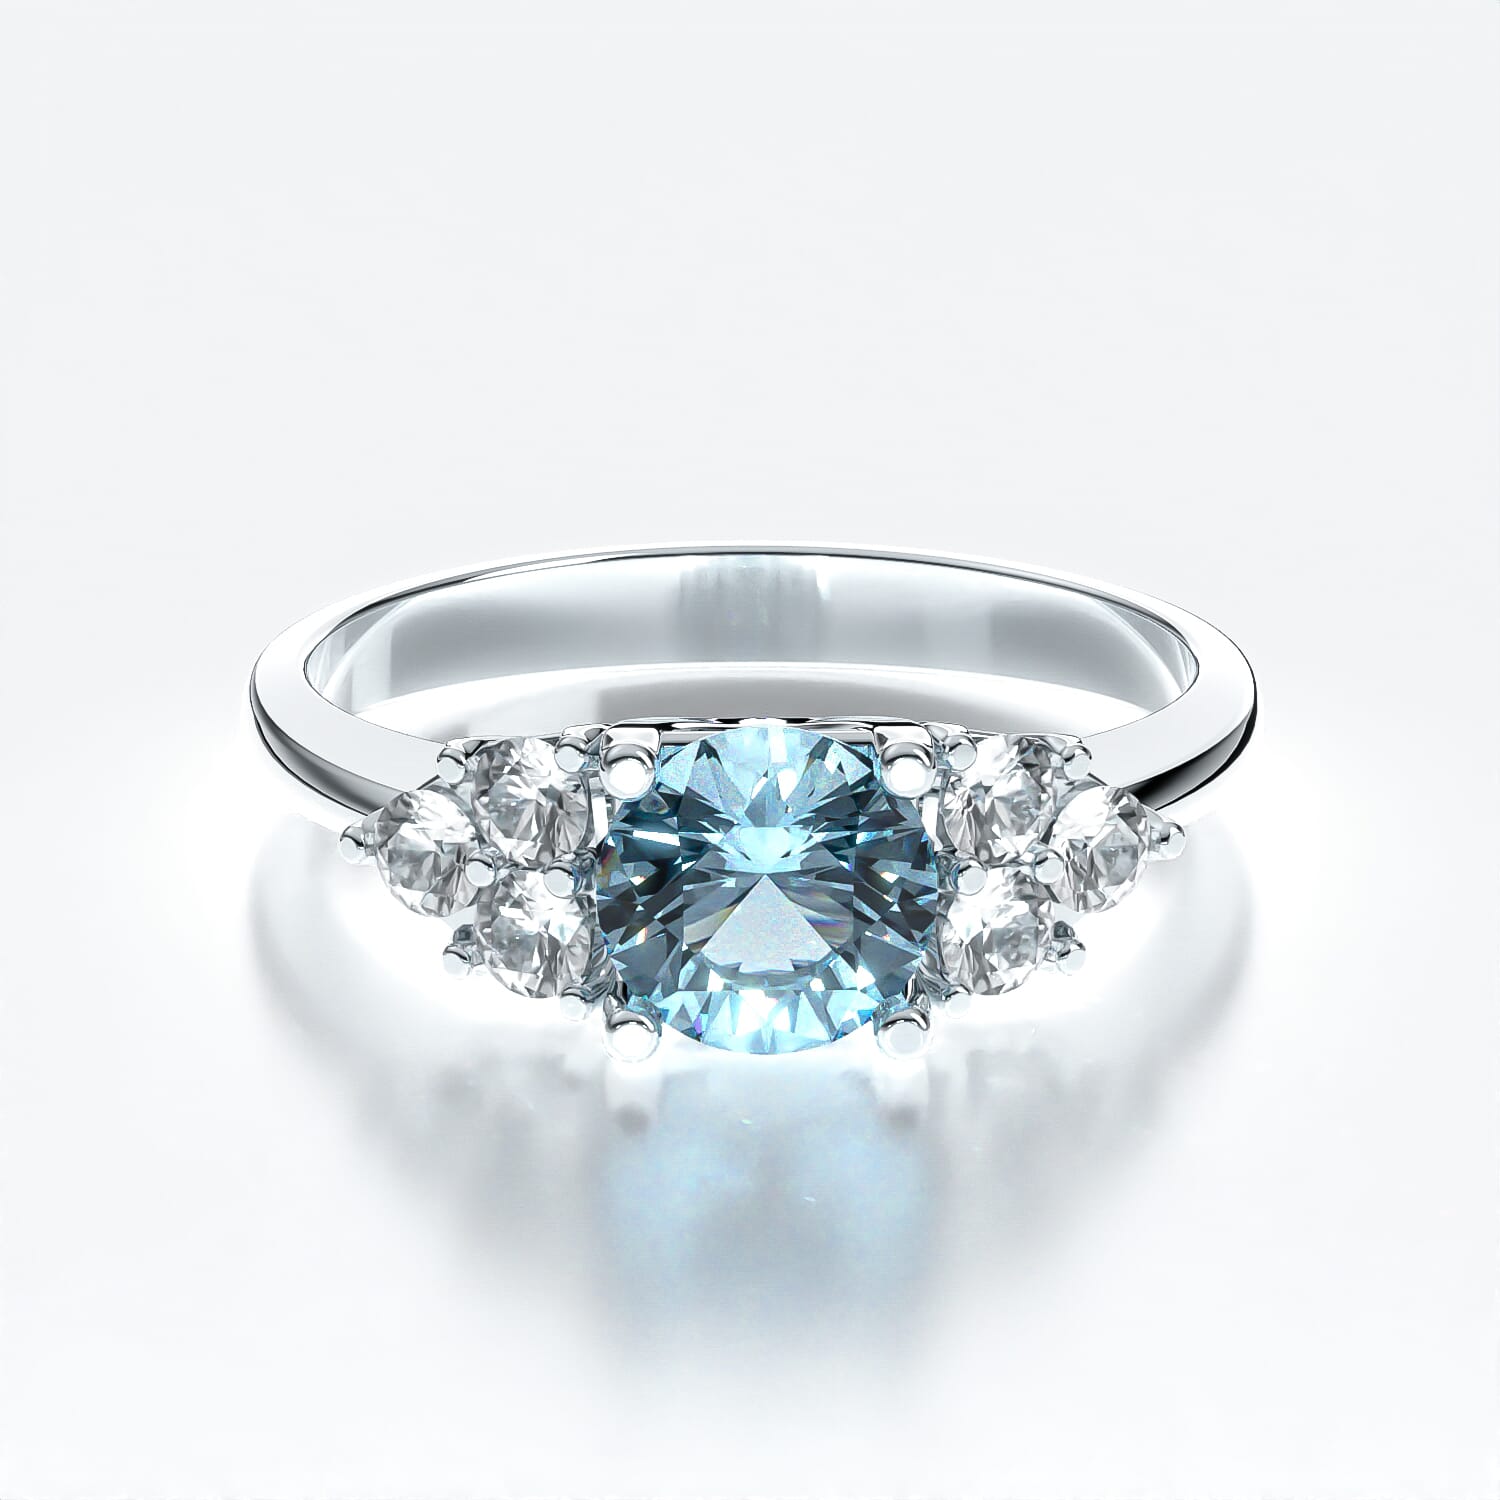 Fairytale Engagement Ring: white gold, aquamarine